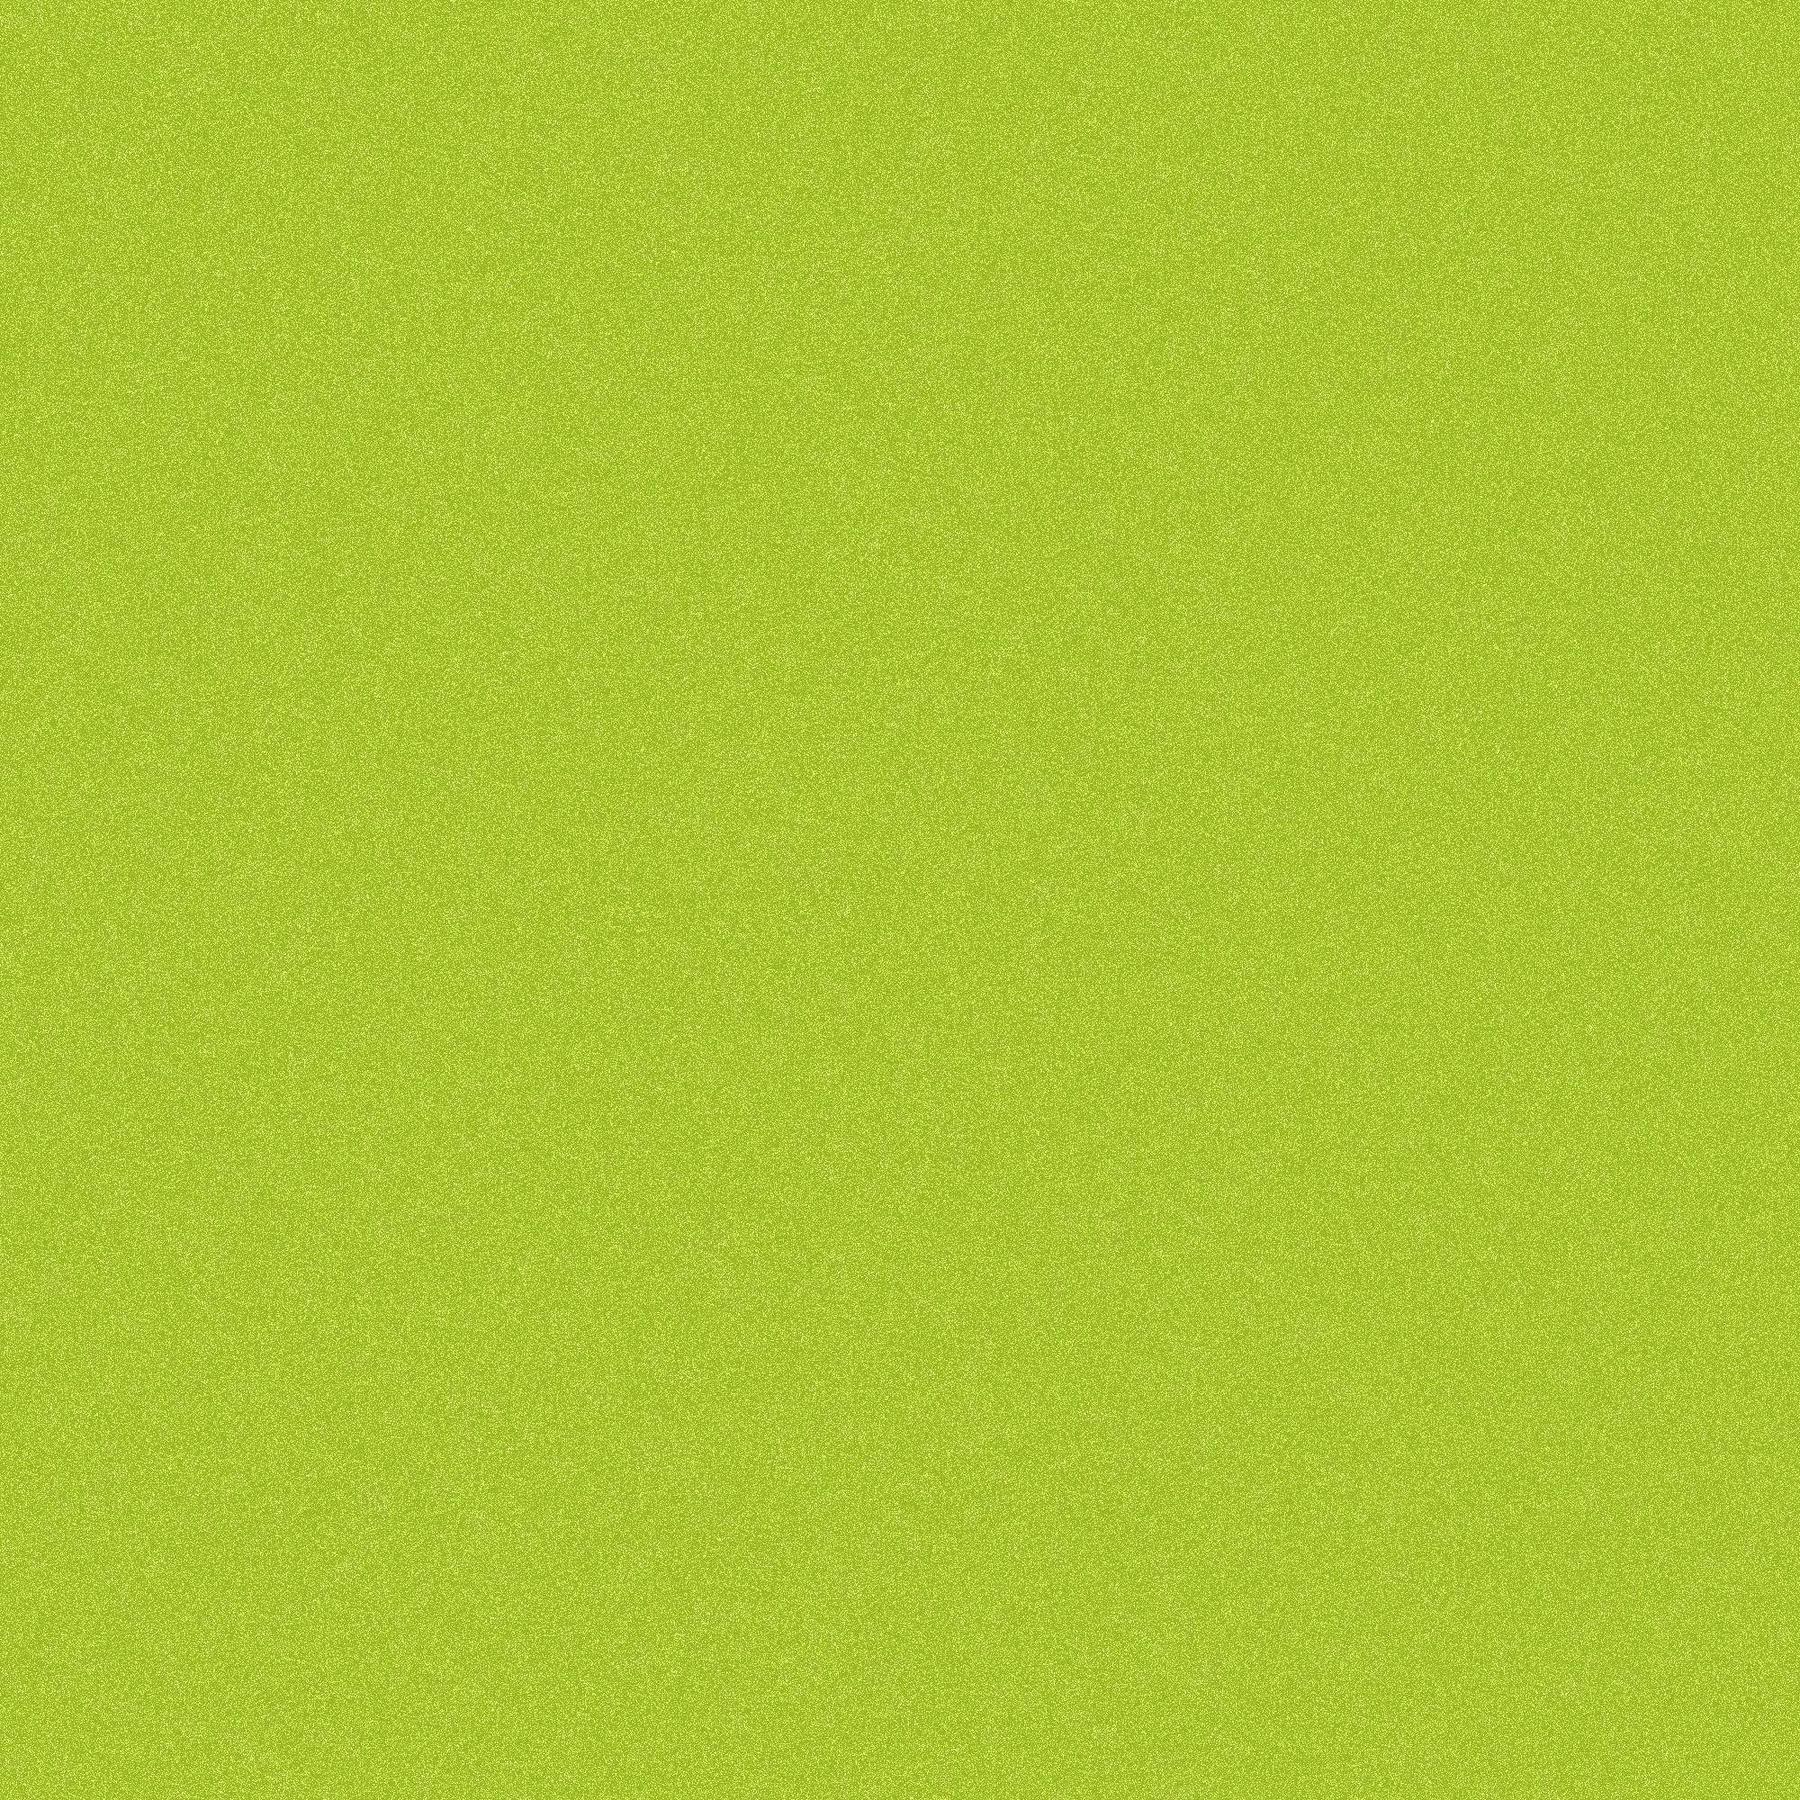 1800x1800 Nền màu xanh lá cây trơn khá (Trang 1)